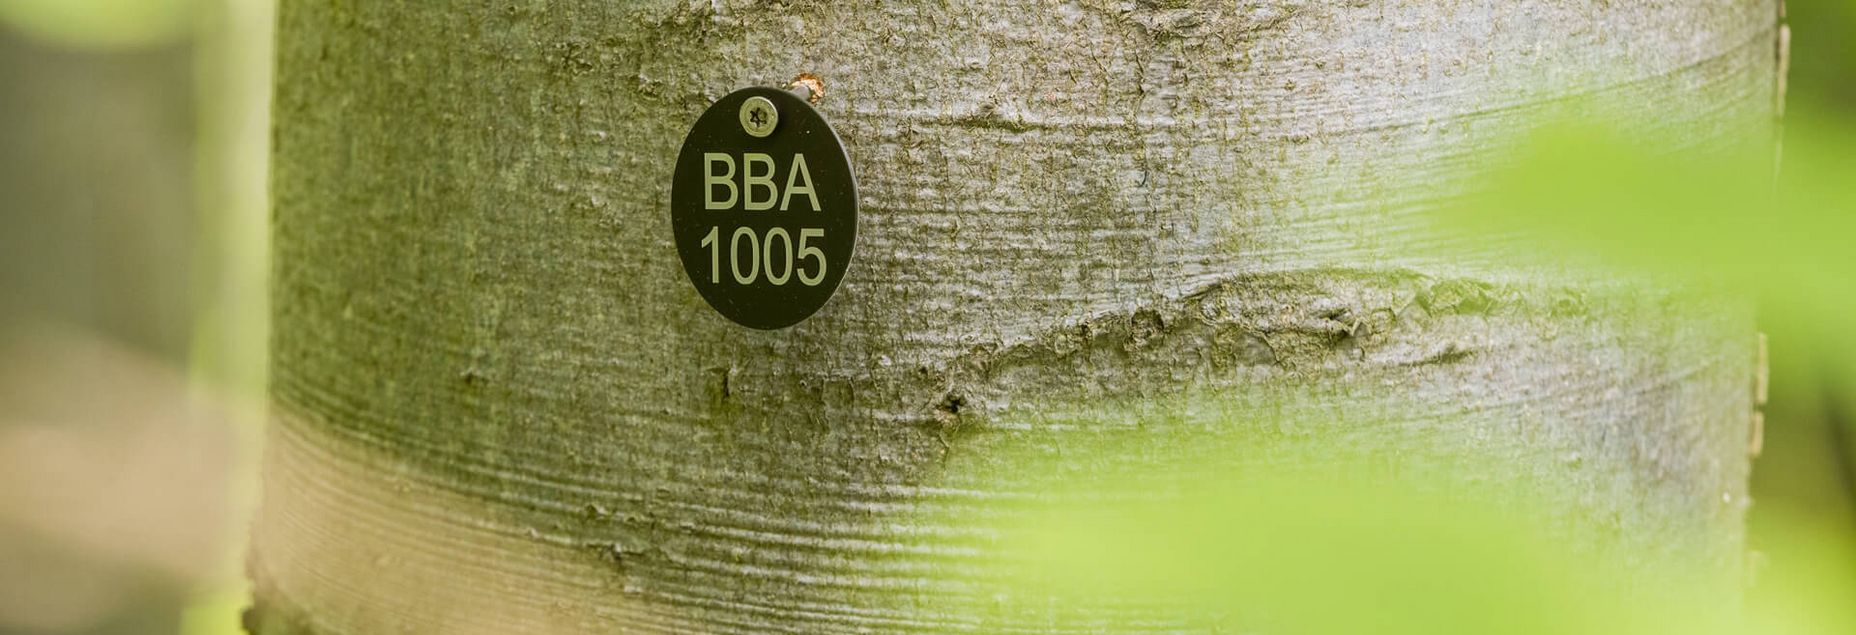 Baum BBA 1005 - Plakette